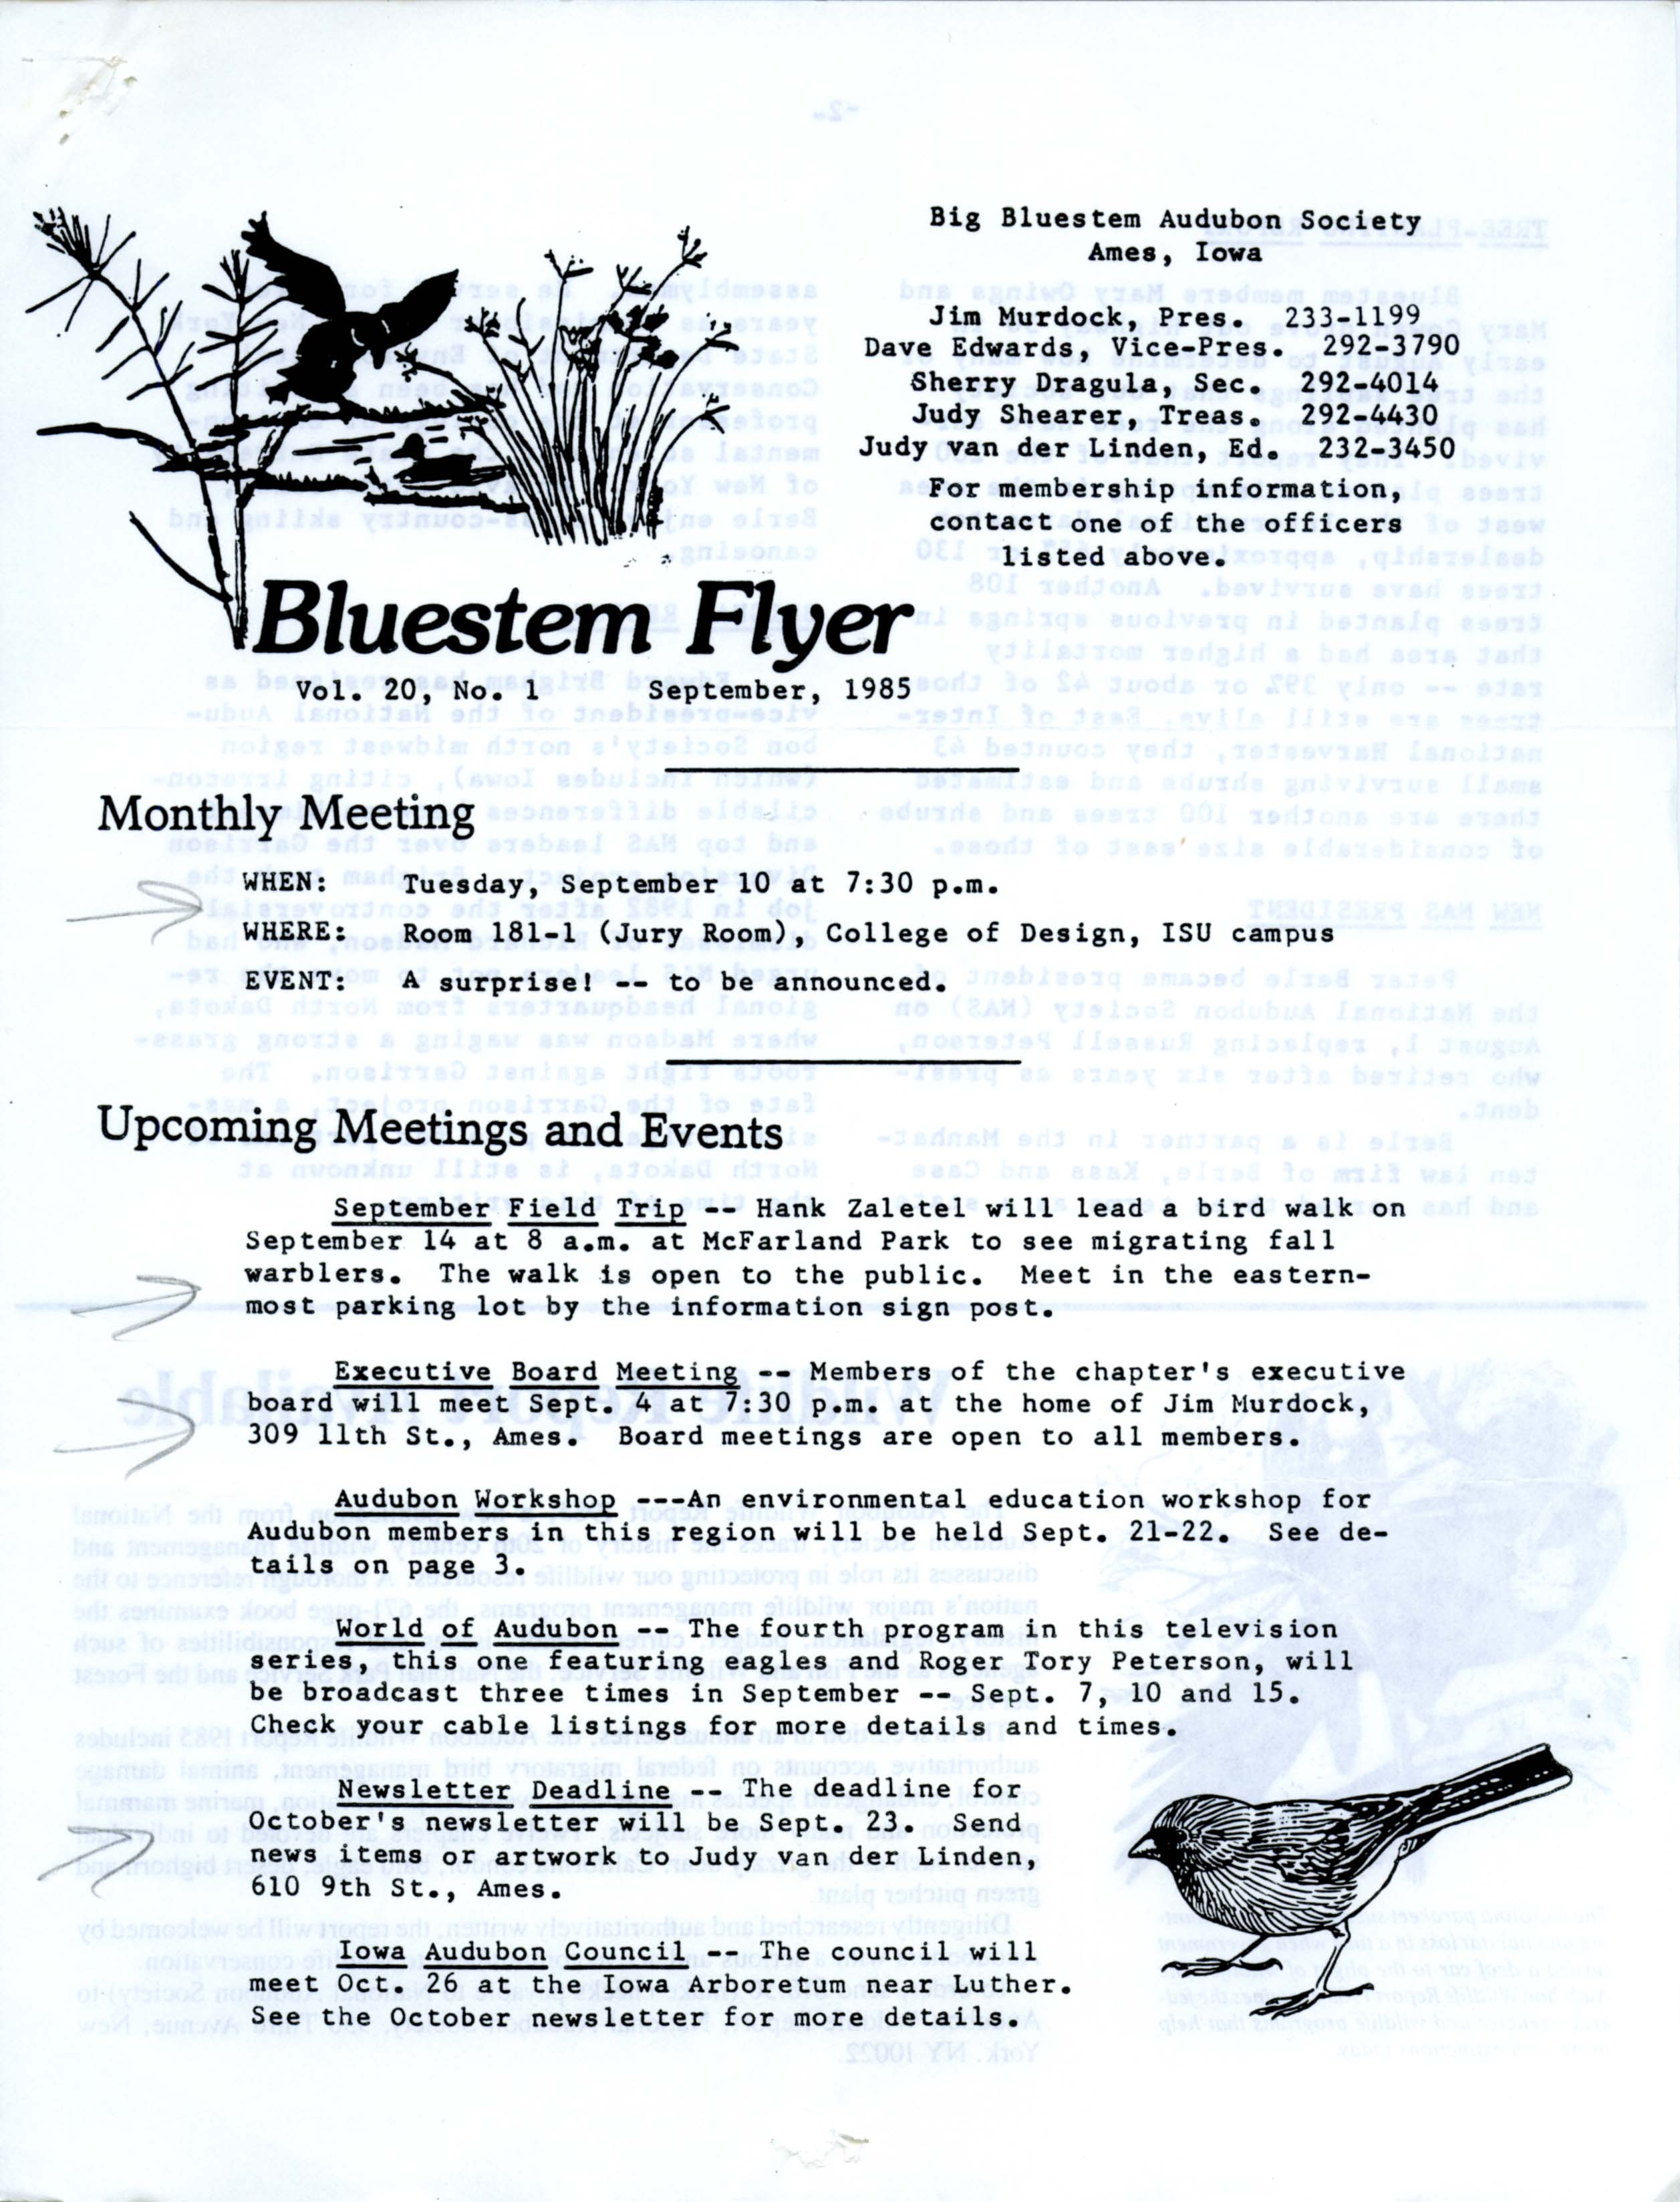 Bluestem Flyer, Volume 20, Number 1, September 1985